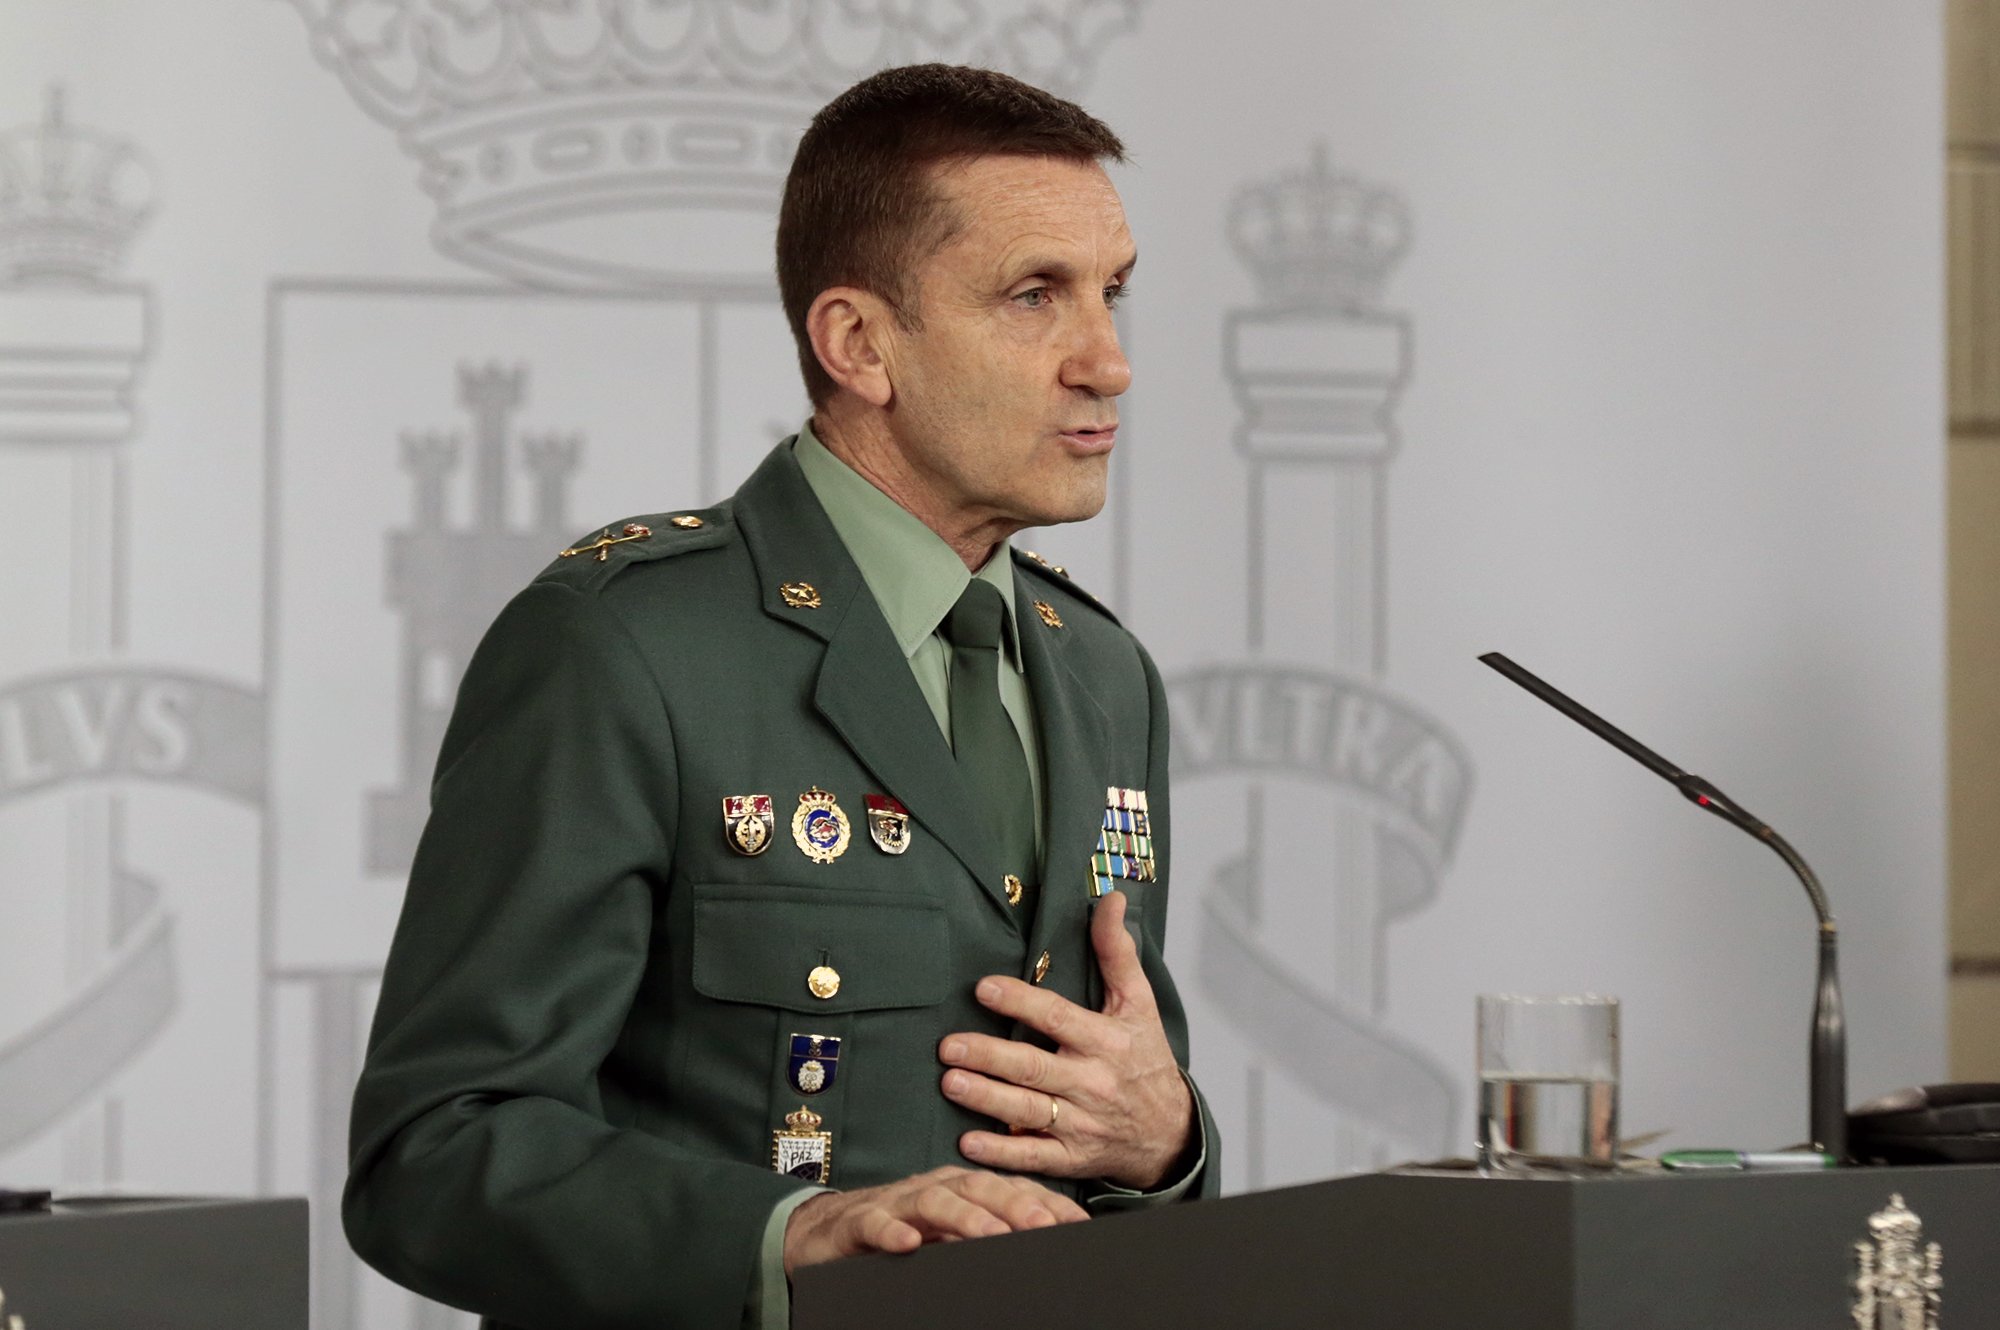 El general de la Guardia Civil se defiende: "No perseguimos la crítica política"